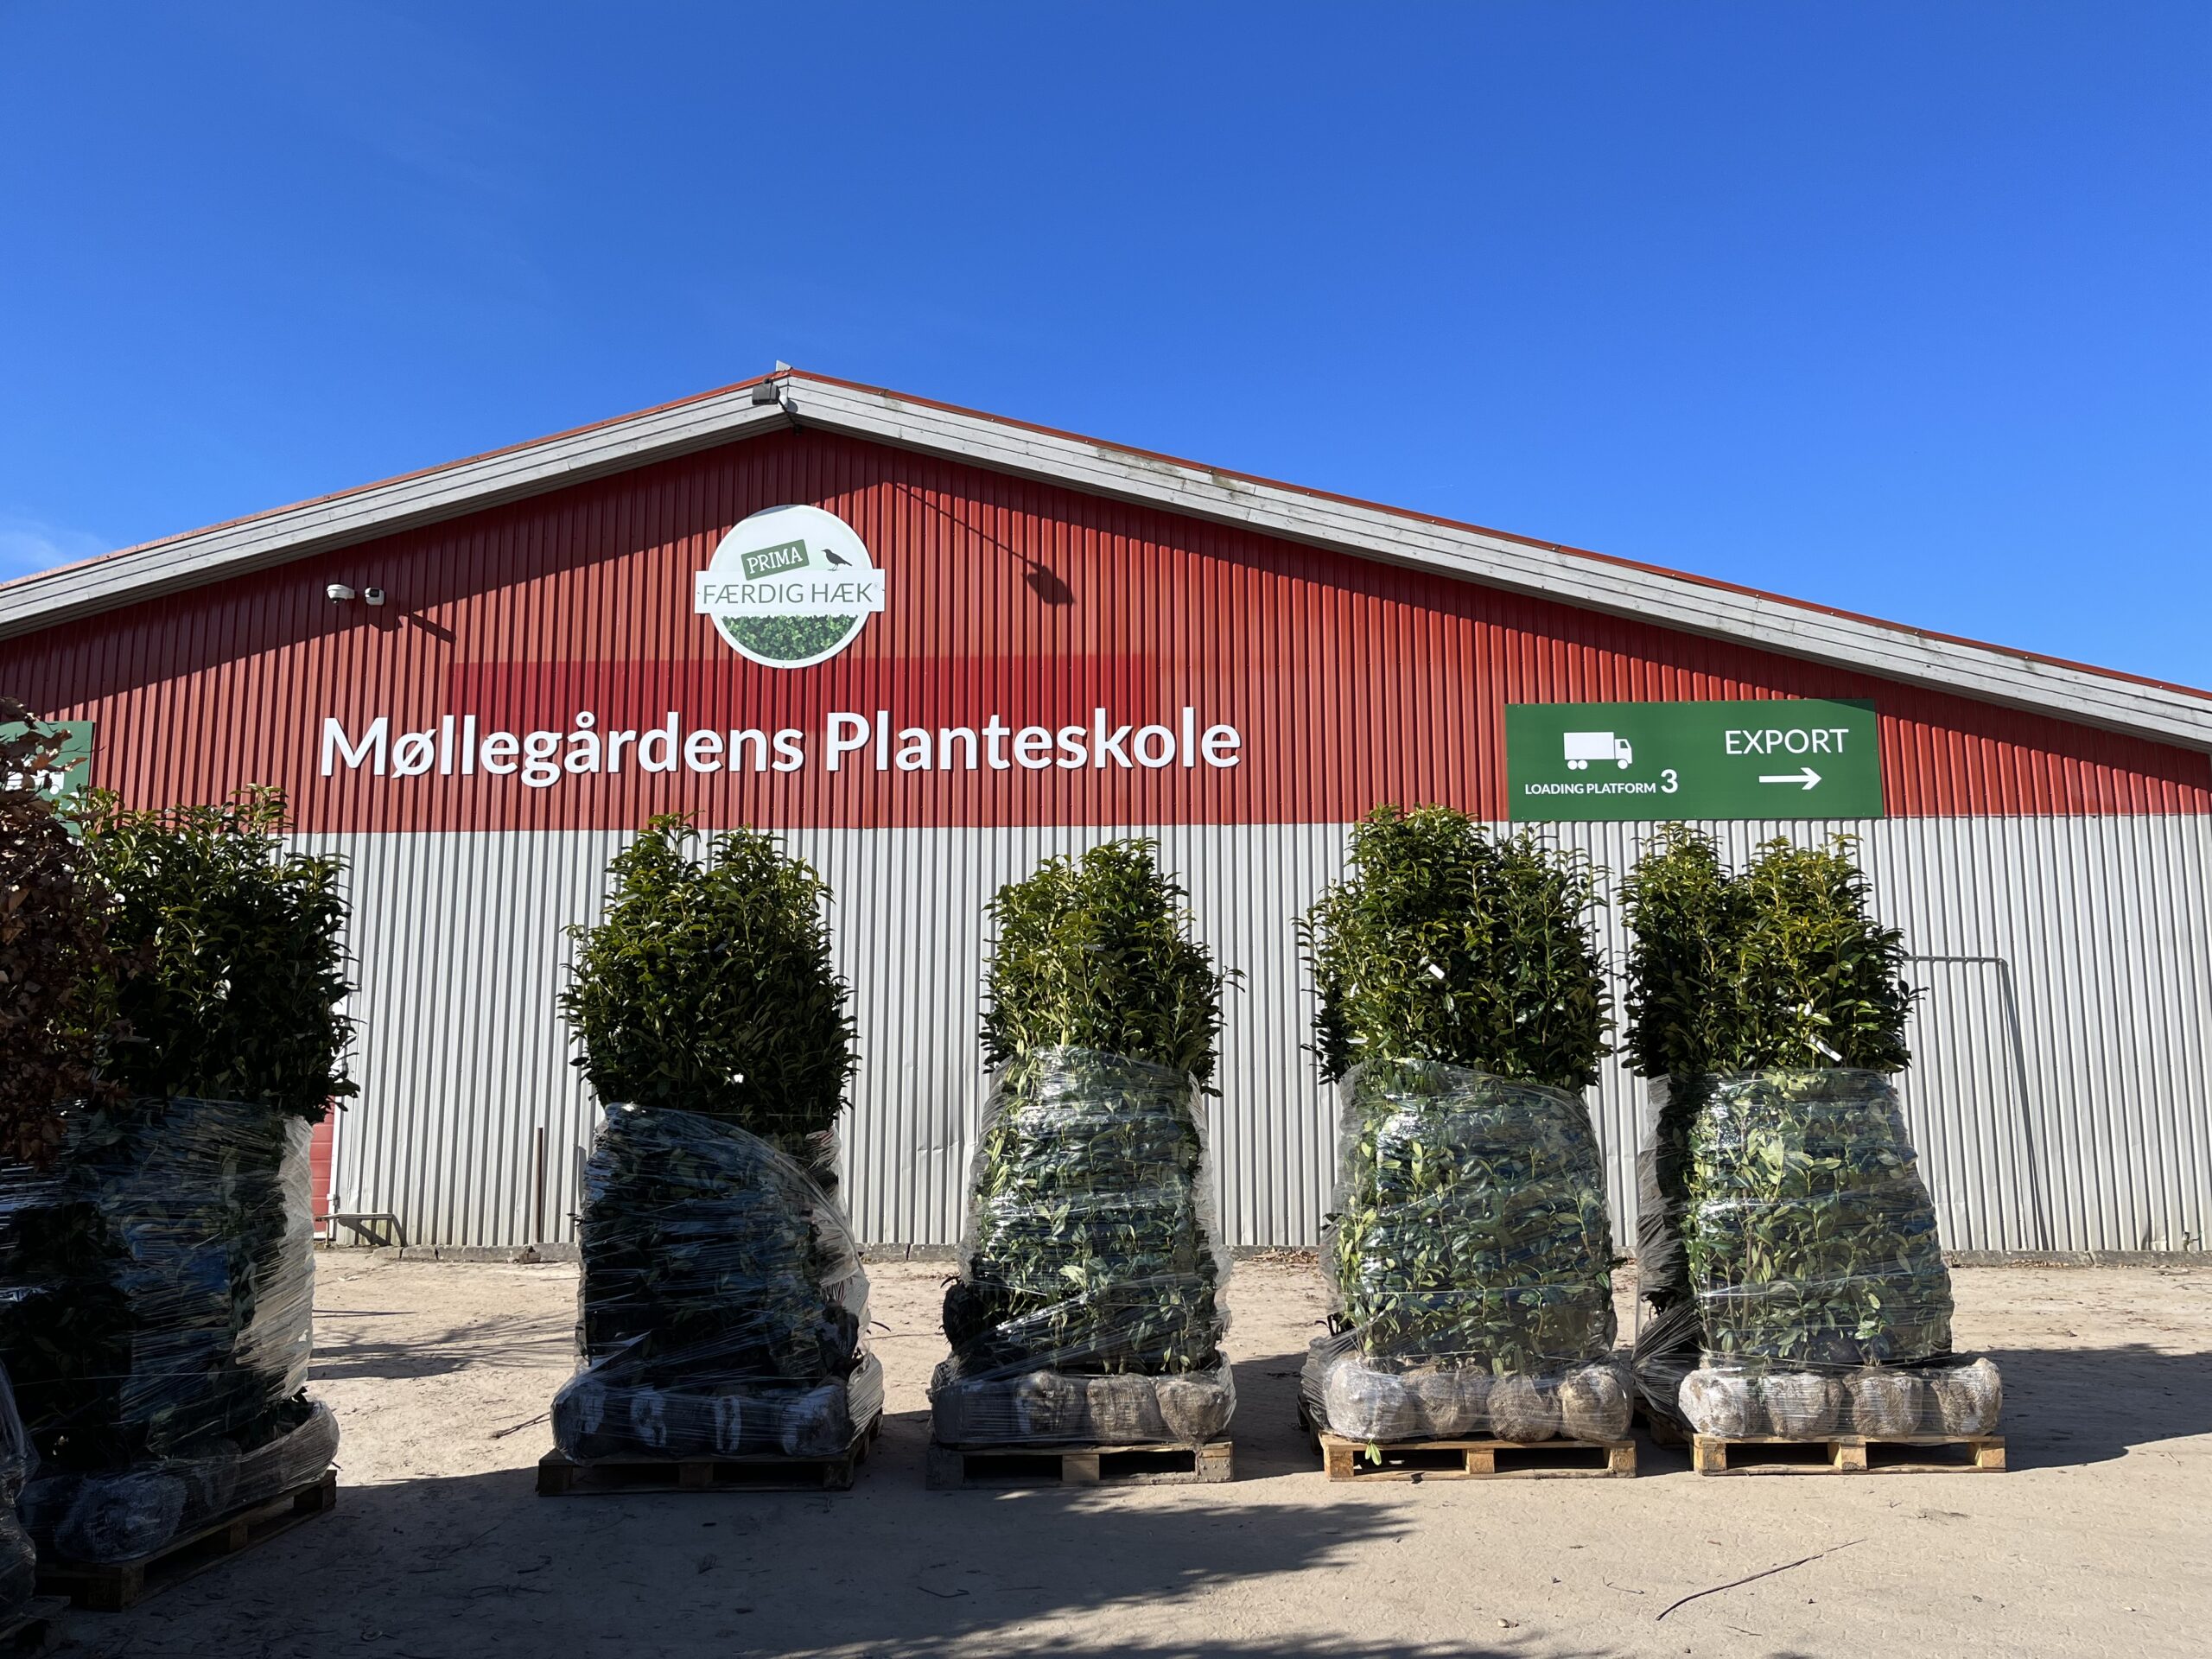 5 grønne færdighække og den røde og grå bygning hos FÆRDIGHÆK, Møllegårdens Planteskole i Ringe